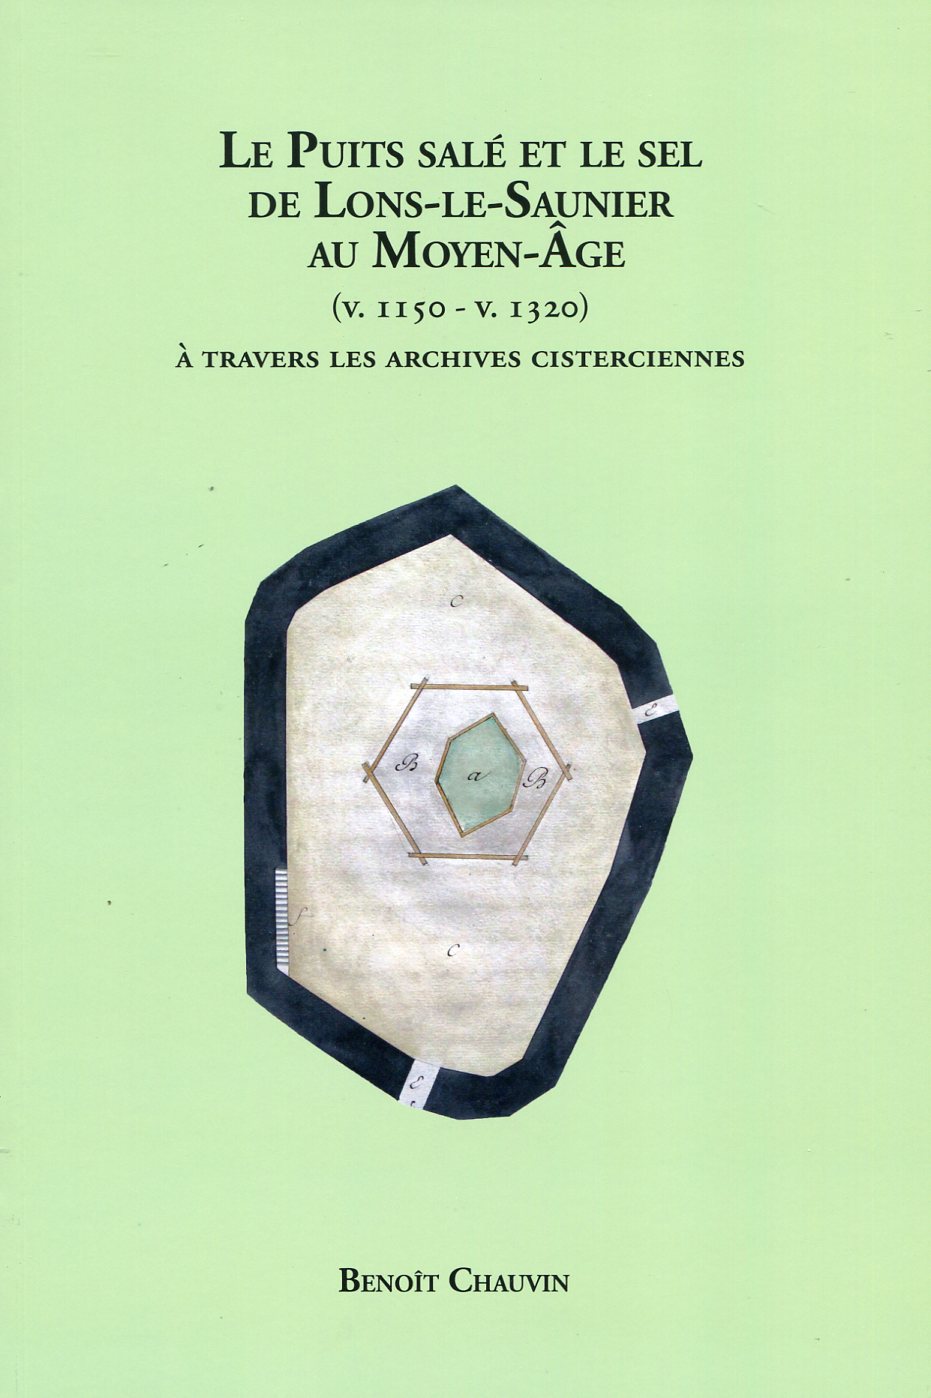 Le Puits salé et le sel de Lons-le-Saunier au Moyen Age (v. 1150-v. 1320) à travers les archives cisterciennes, 2020, 192 p.